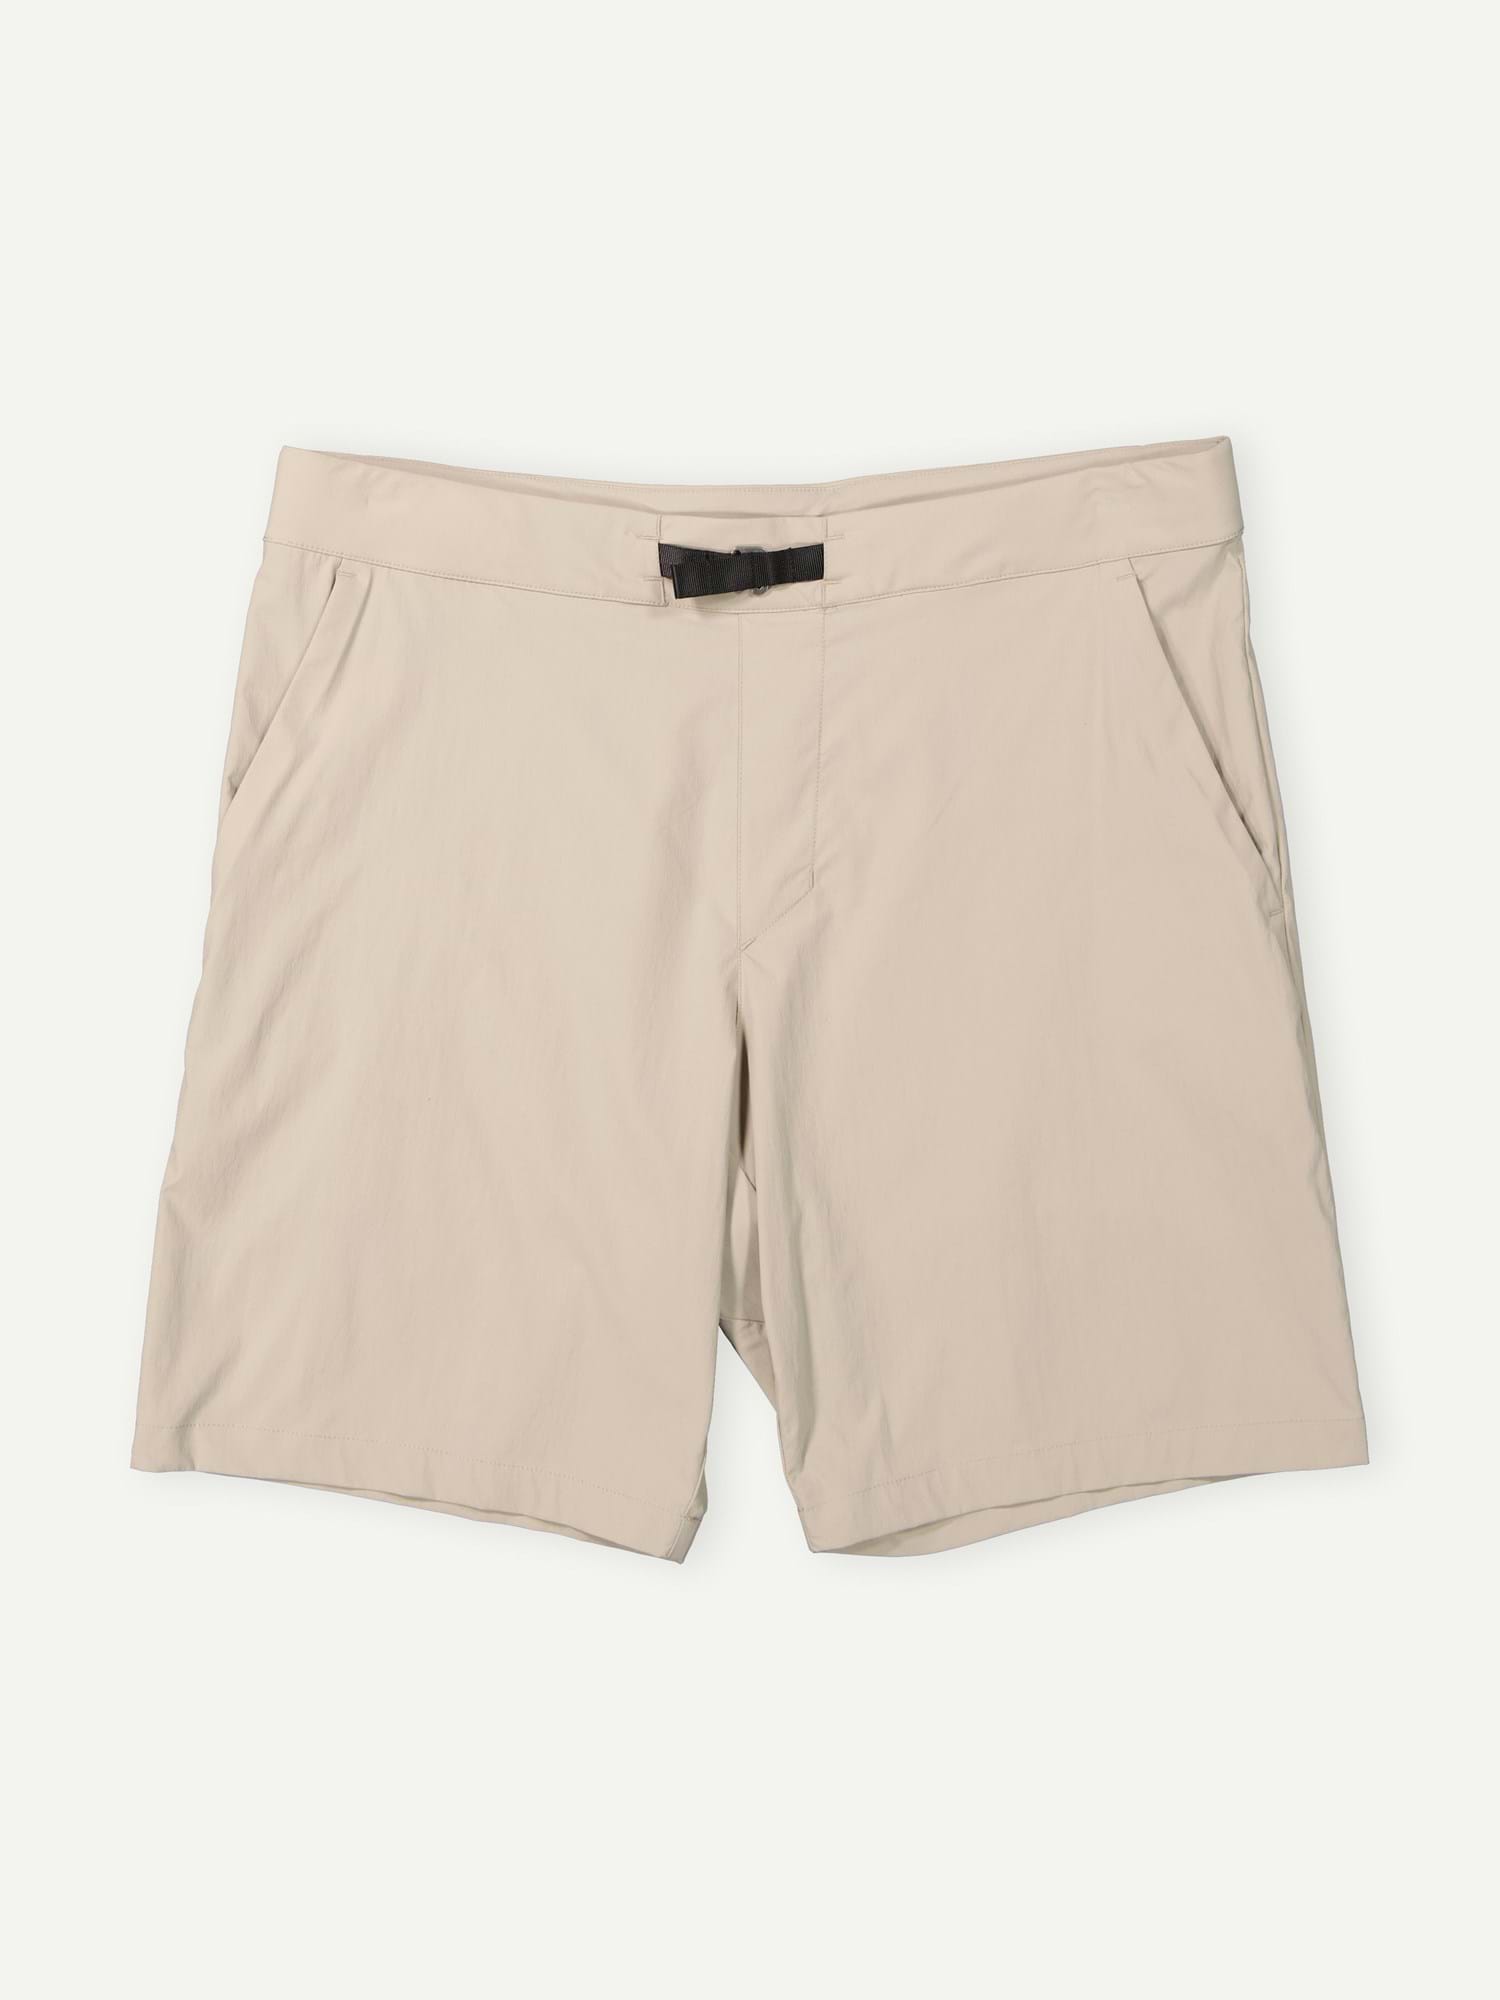 Explore Men's Shorts